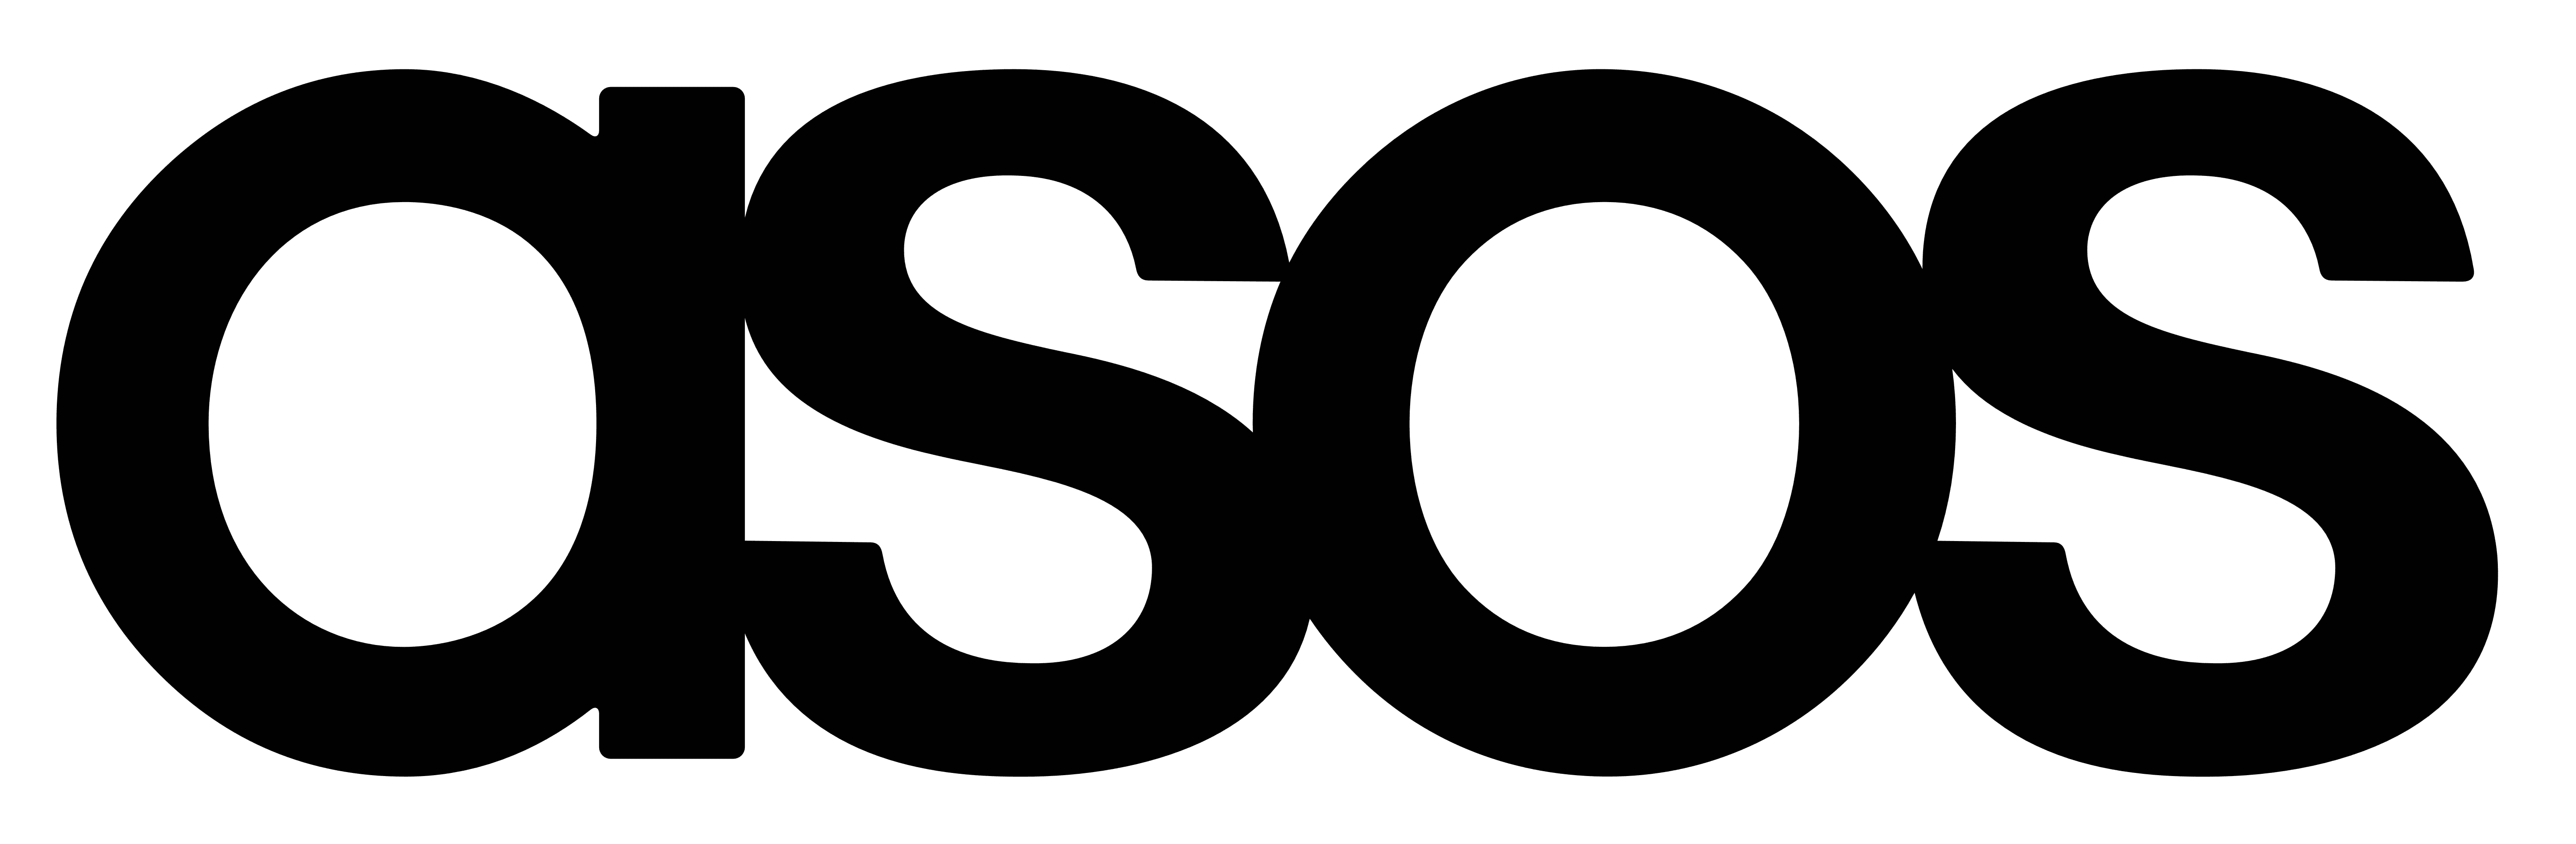 Asos_logo | Raise the Bar